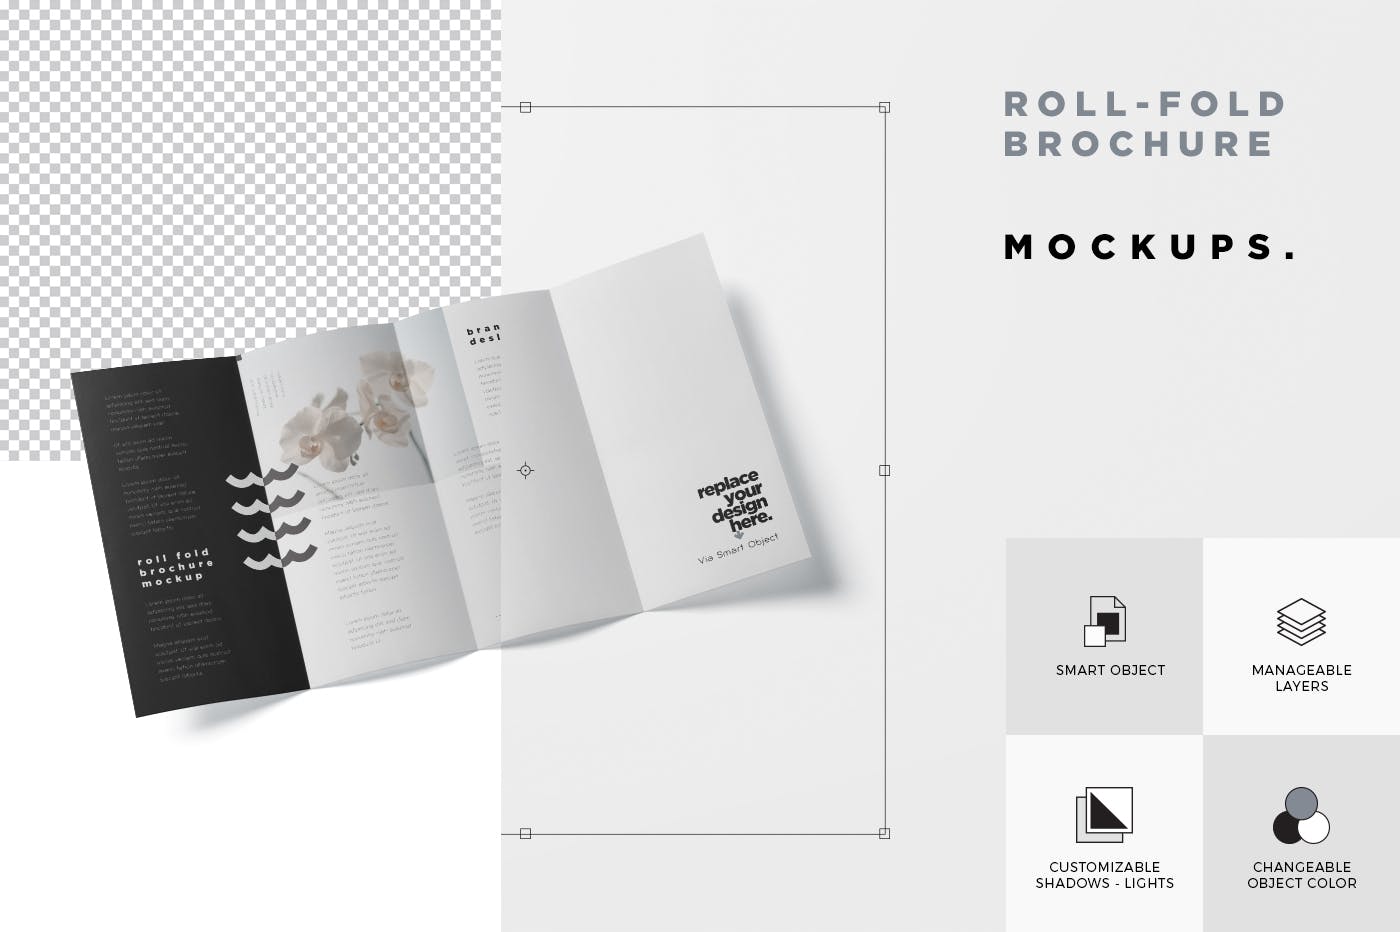 折叠设计风格企业传单/宣传册设计样机非凡图库精选 Roll-Fold Brochure Mockup – DL DIN Lang Size插图(6)